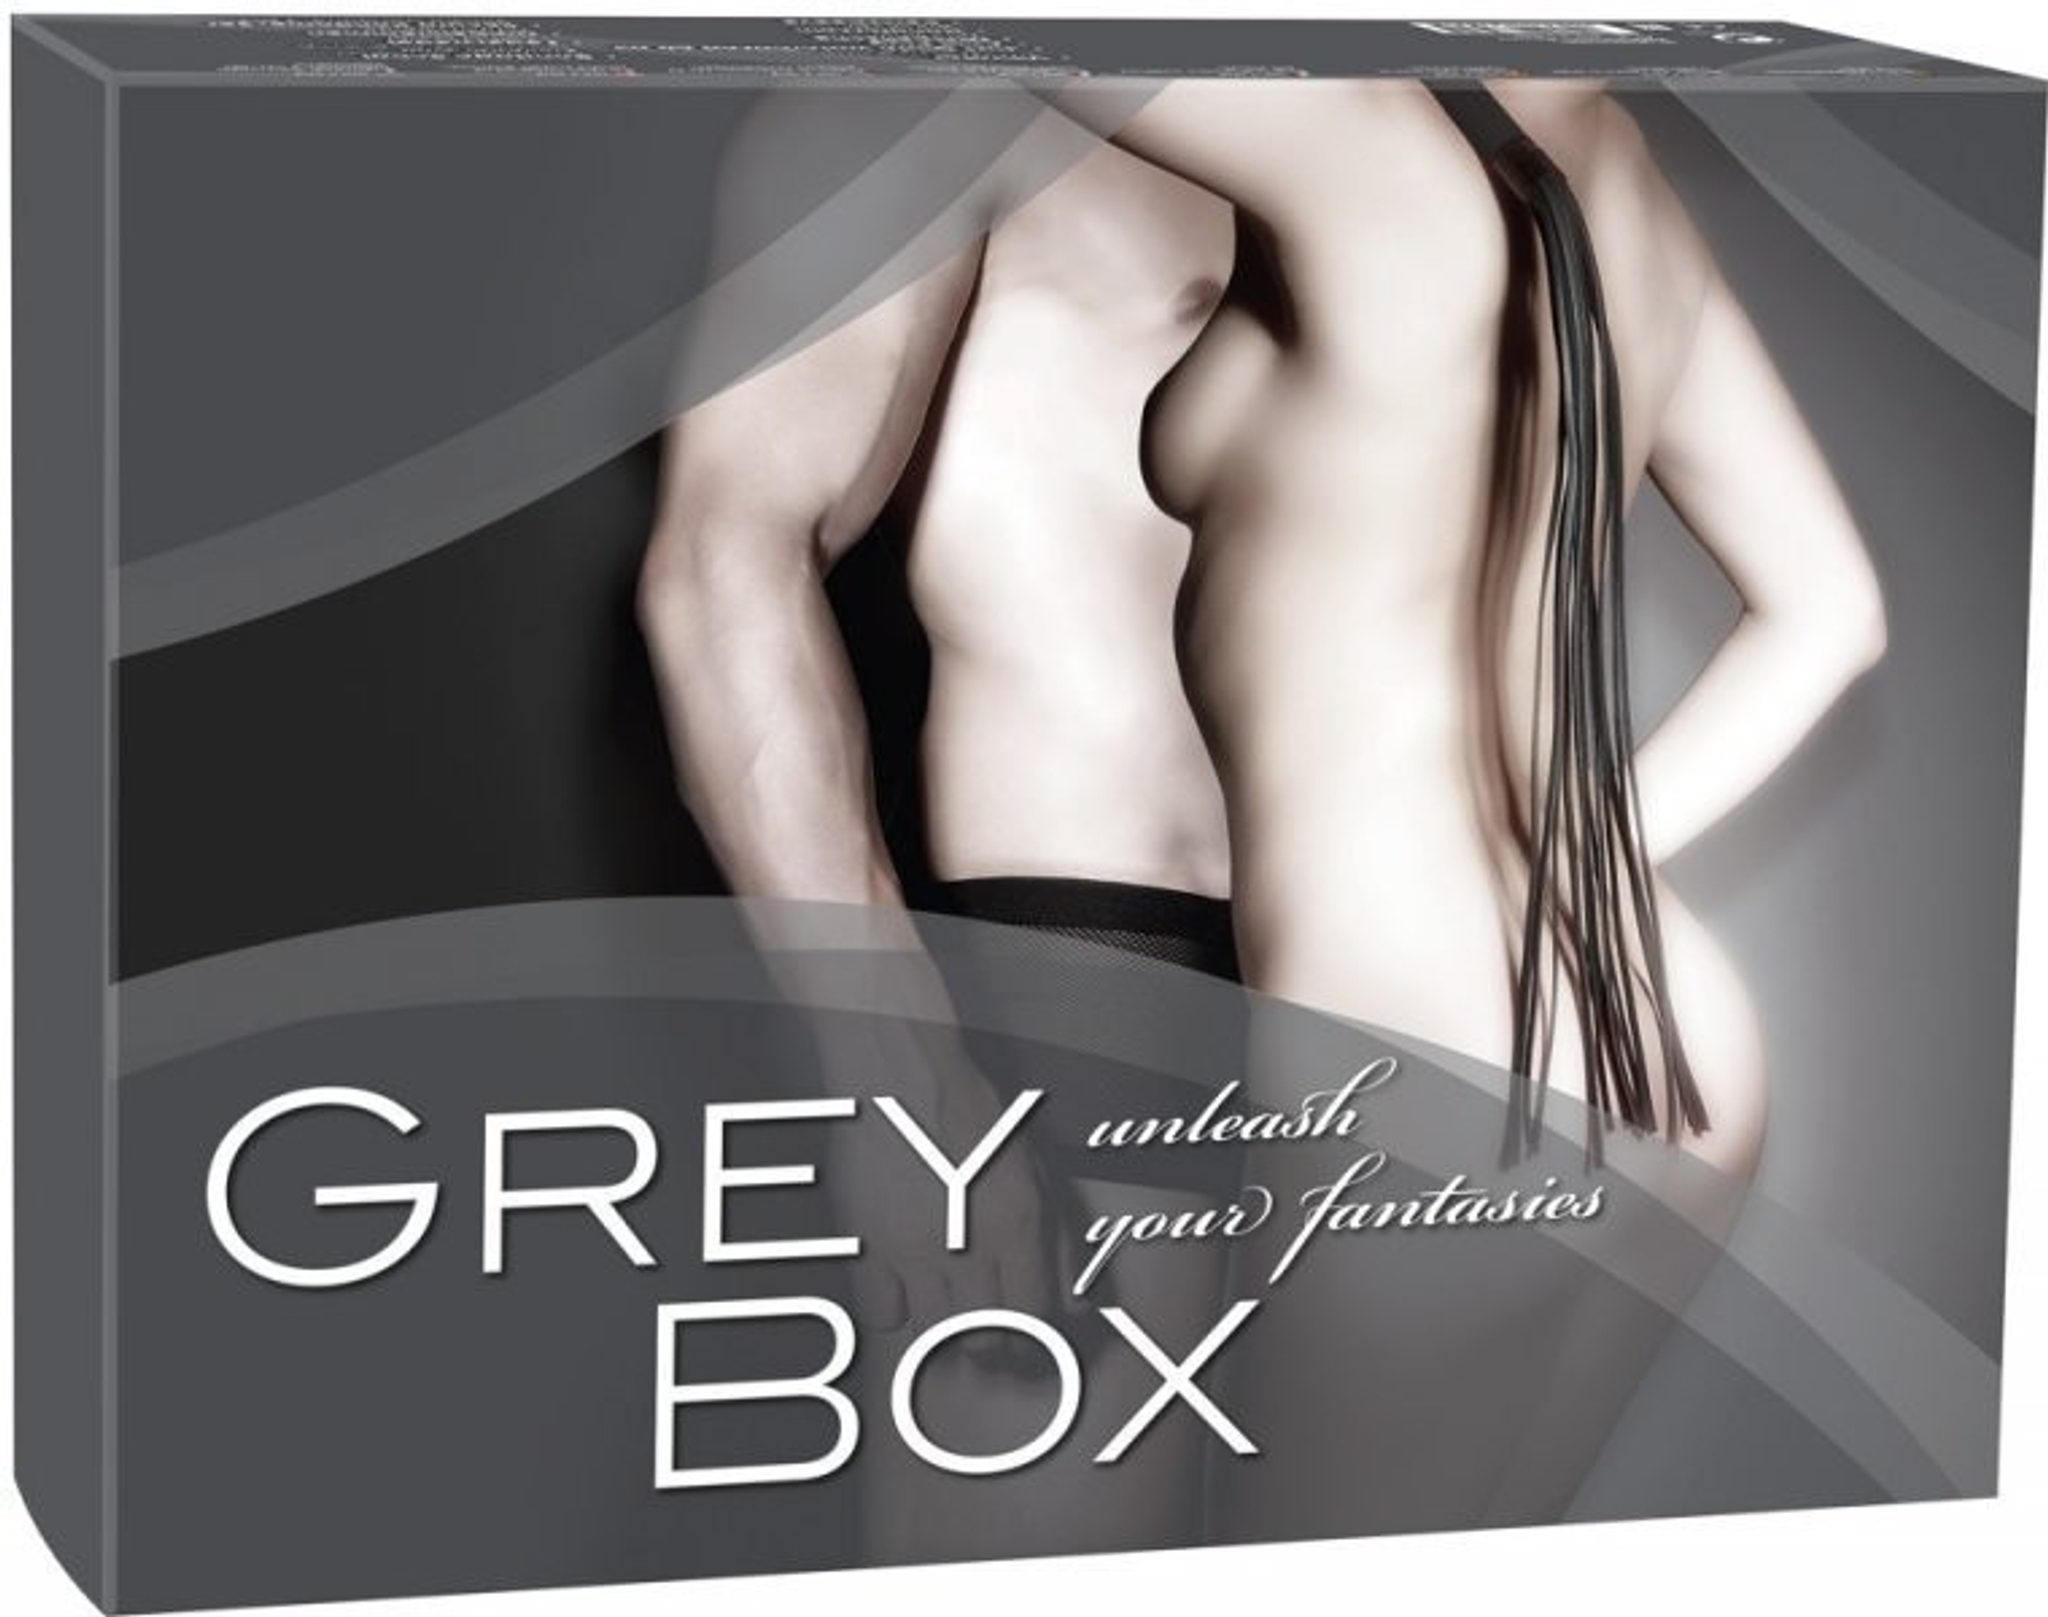 Fifty shades og Grey Box